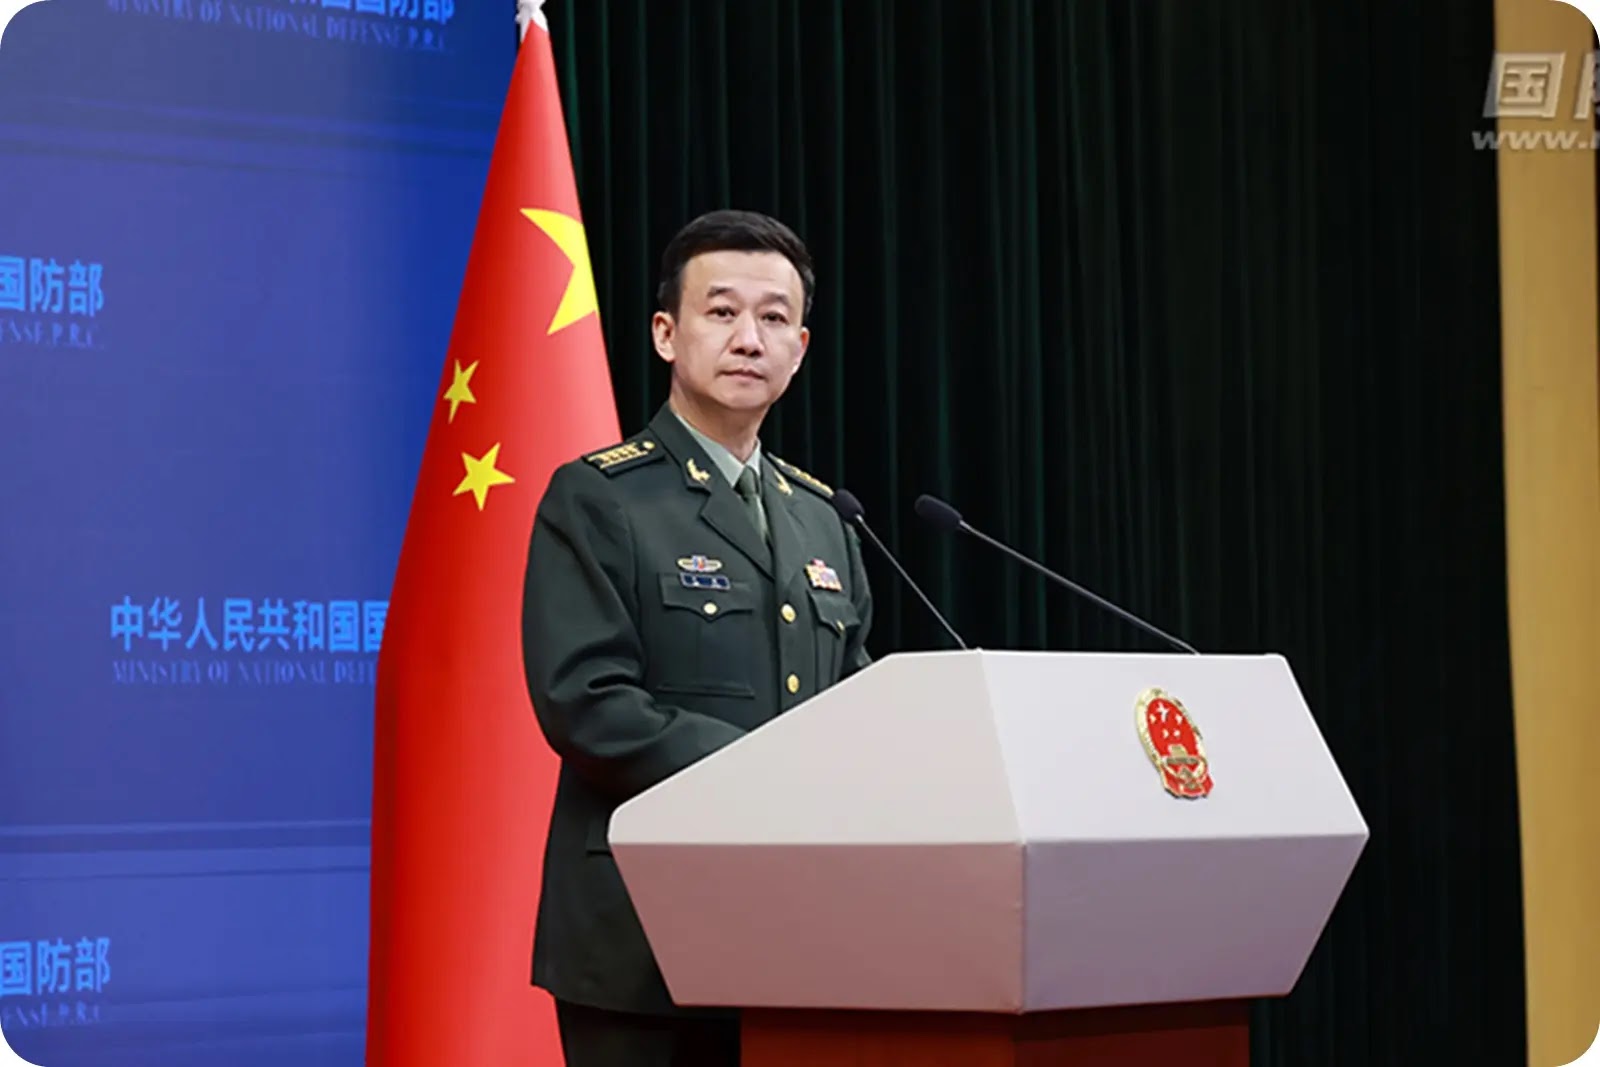 Senior Colonel Wu Qian PRC MND Spokesperson